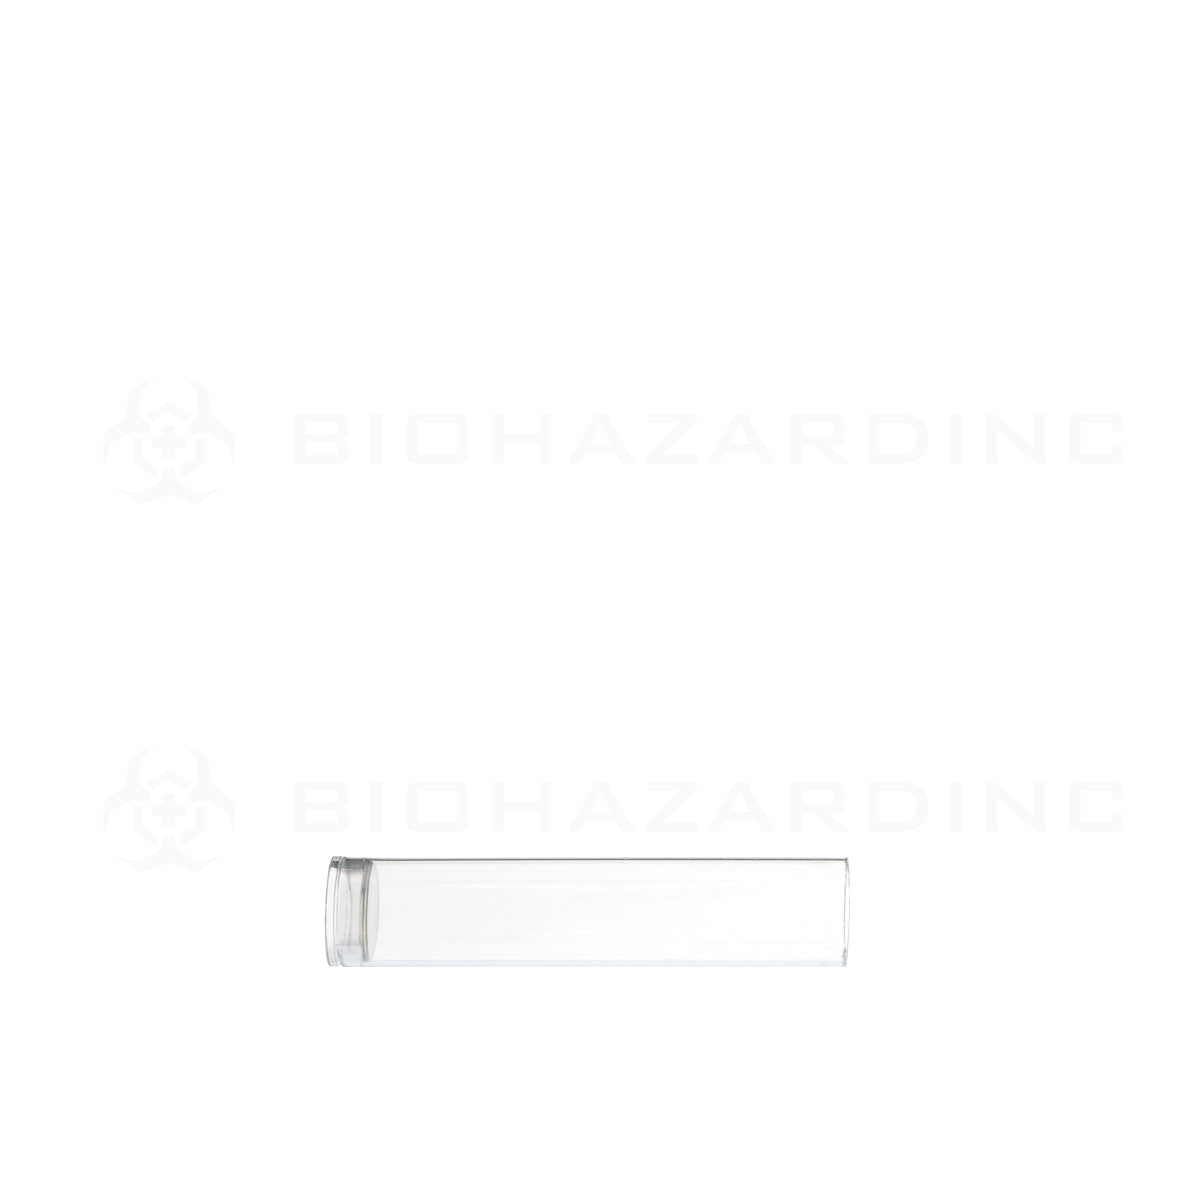 Cartridge Tube | Clear Vape Cartridge Tube w/ White Cap | .5mL - 500 Count Storage Tube Biohazard Inc   